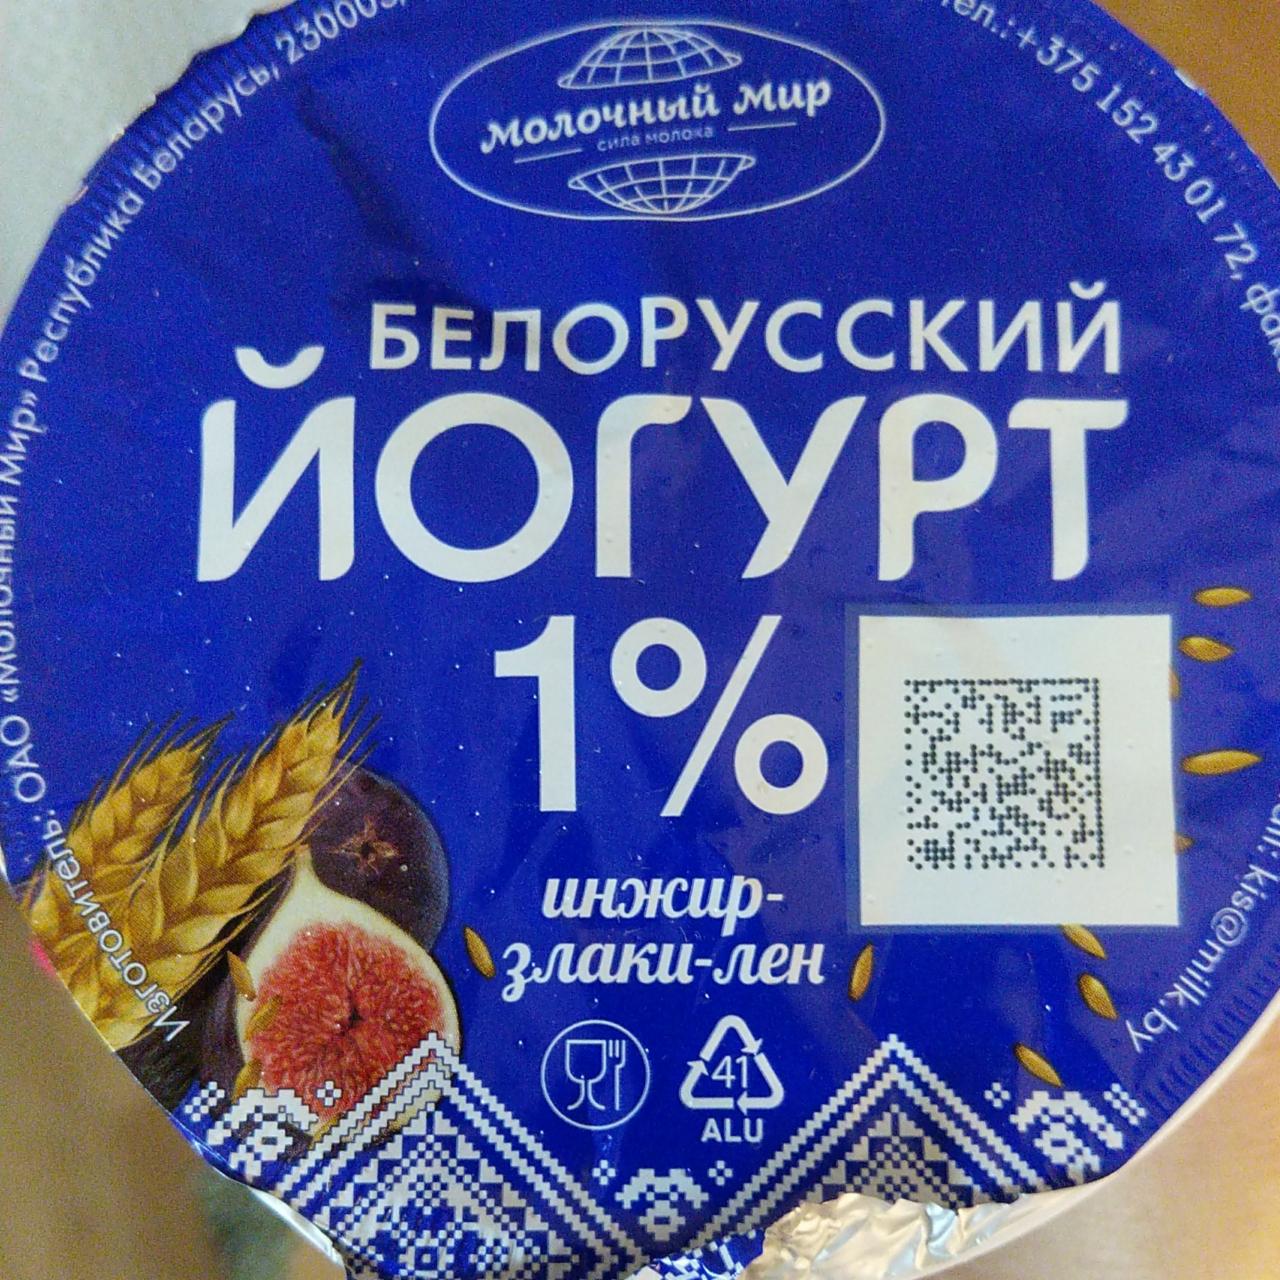 Фото - белорусский йогурт 1% инжир -злаки-лён Молочный мир